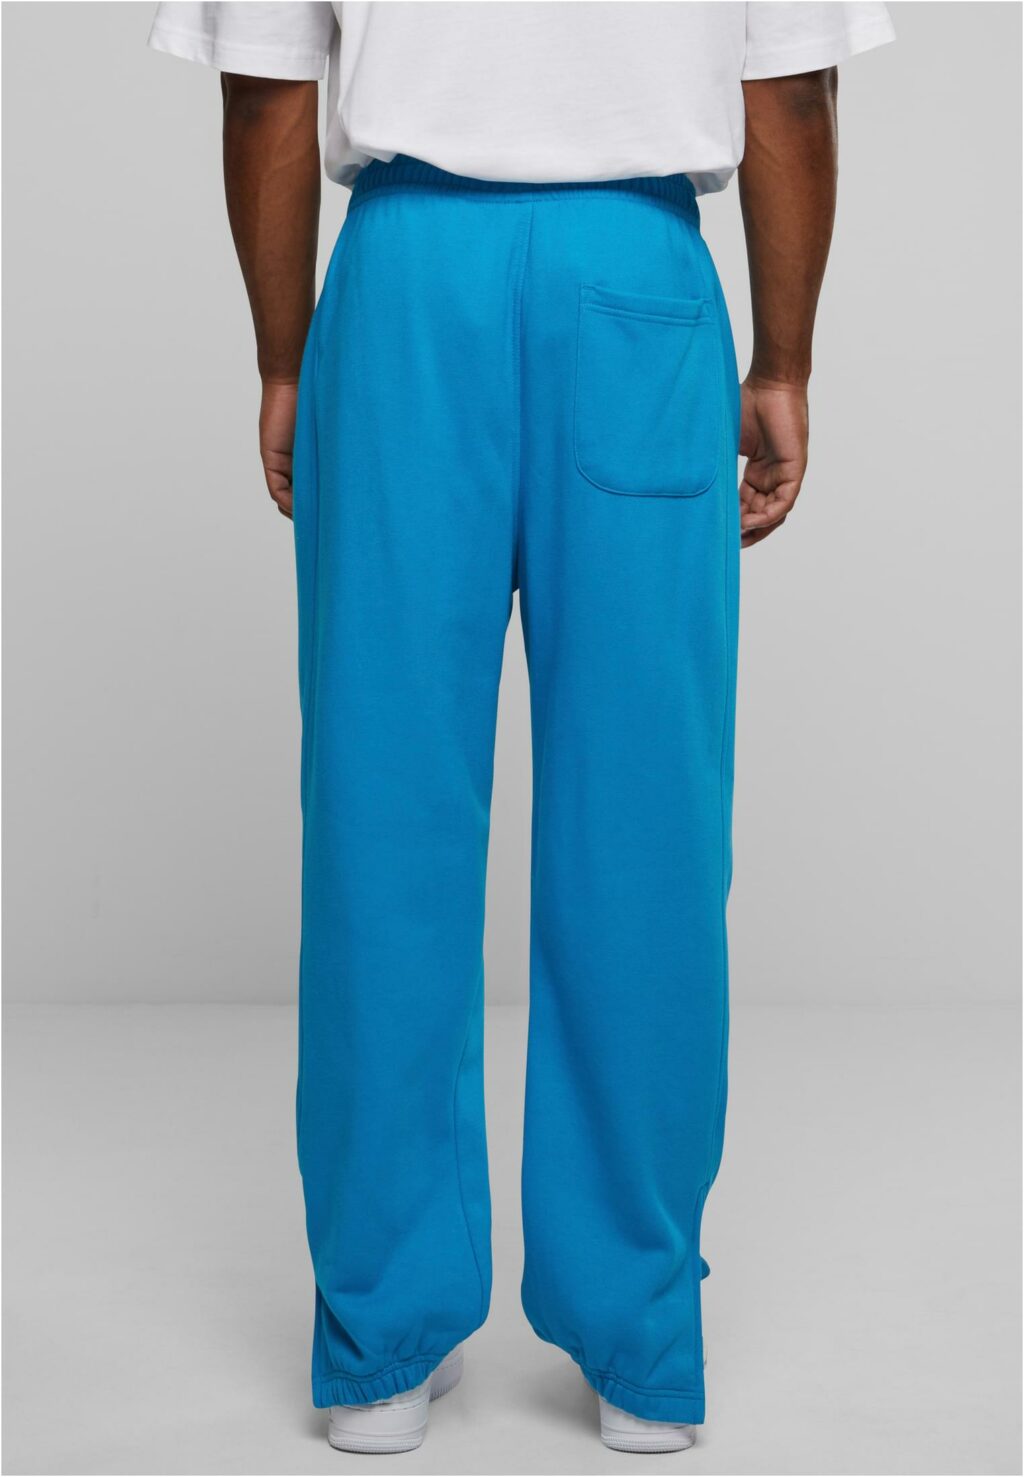 Urban Classics Sweatpants turquoise TB014B